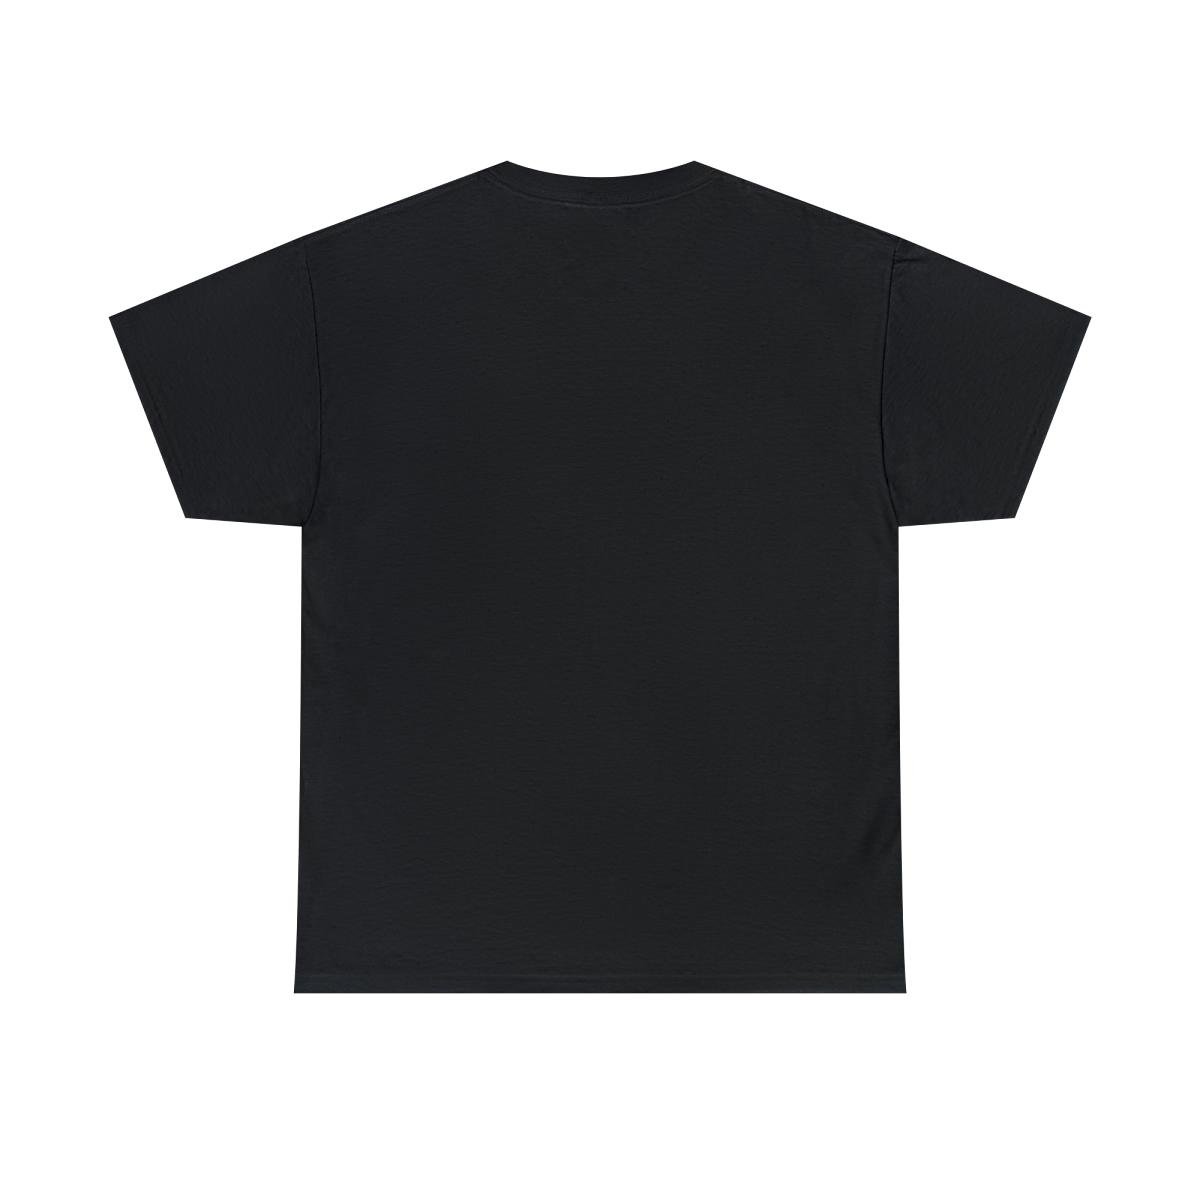 Glae – Deception Cover Short Sleeve Tshirt